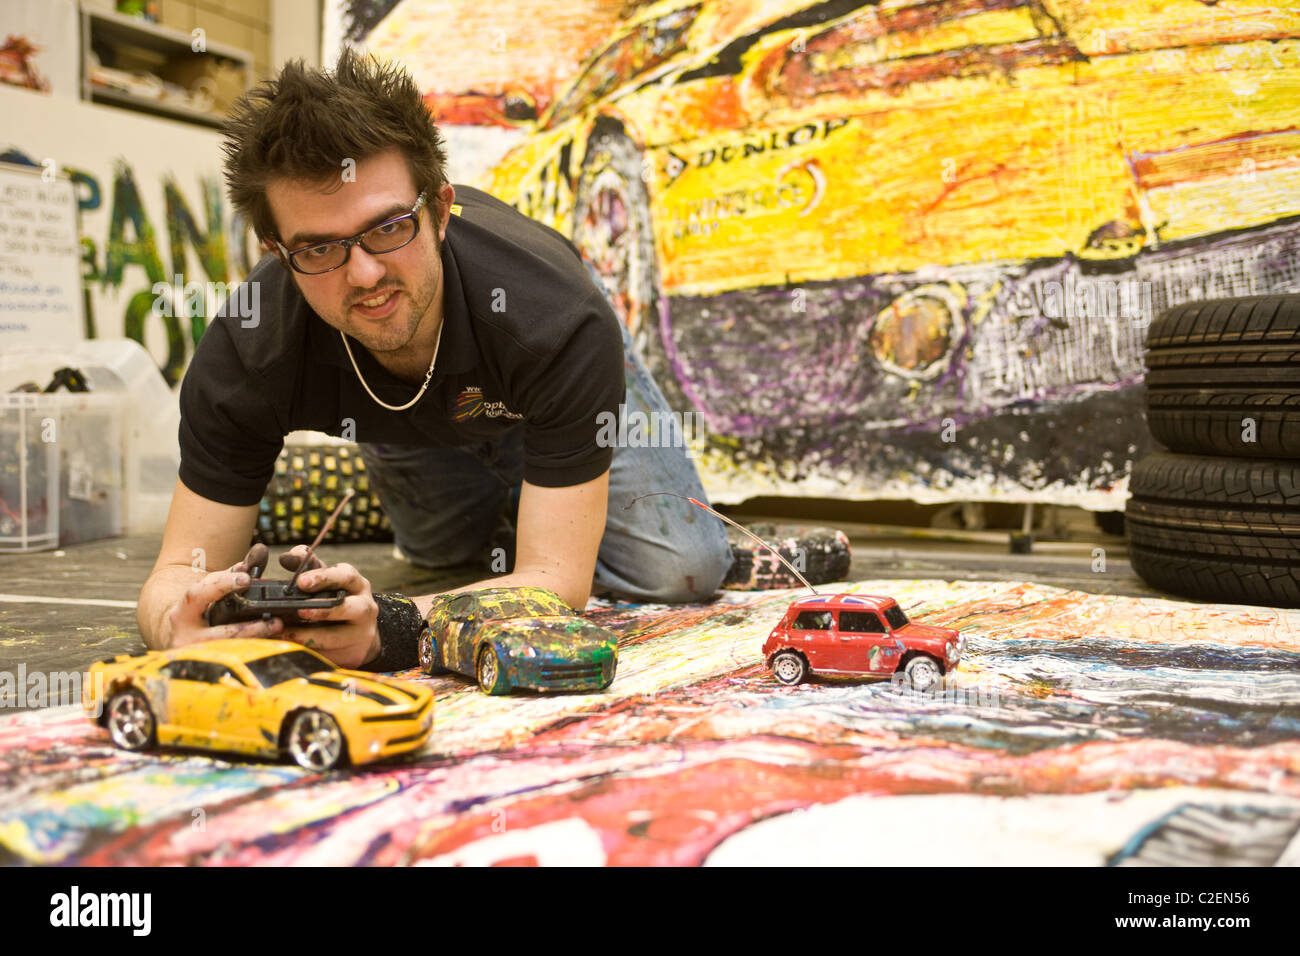 11.4.2011 Ian Cook, die Autos mit remote gesteuerten Spielzeugautos und  Reifen um zu malen mit Farben Stockfotografie - Alamy